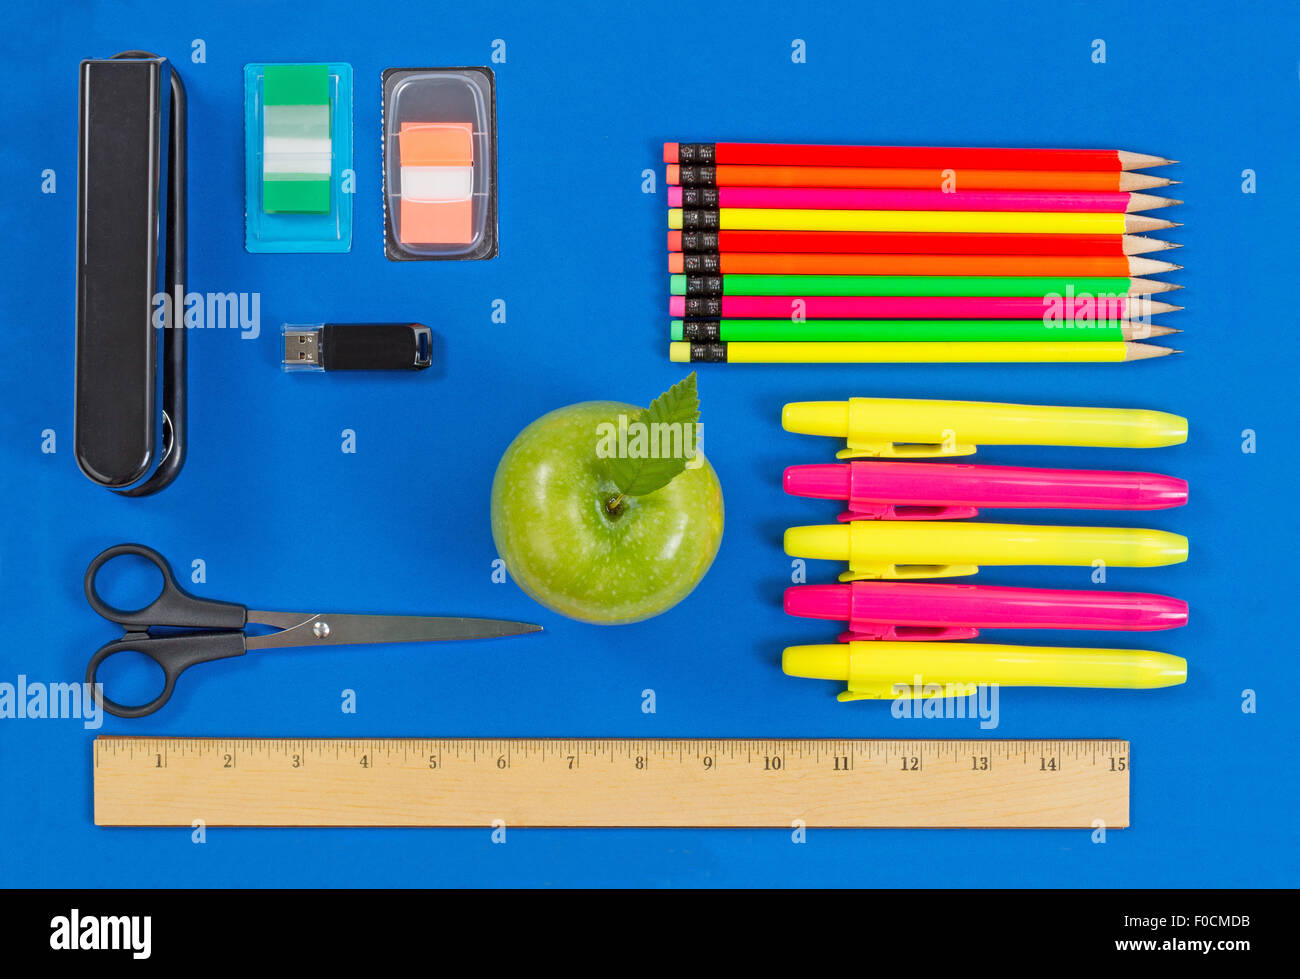 Oficina o back to school suministros consistentes en una manzana verde, resaltar los marcadores, grapadora, thumb drive, regla, tijeras, ficha de mar Foto de stock